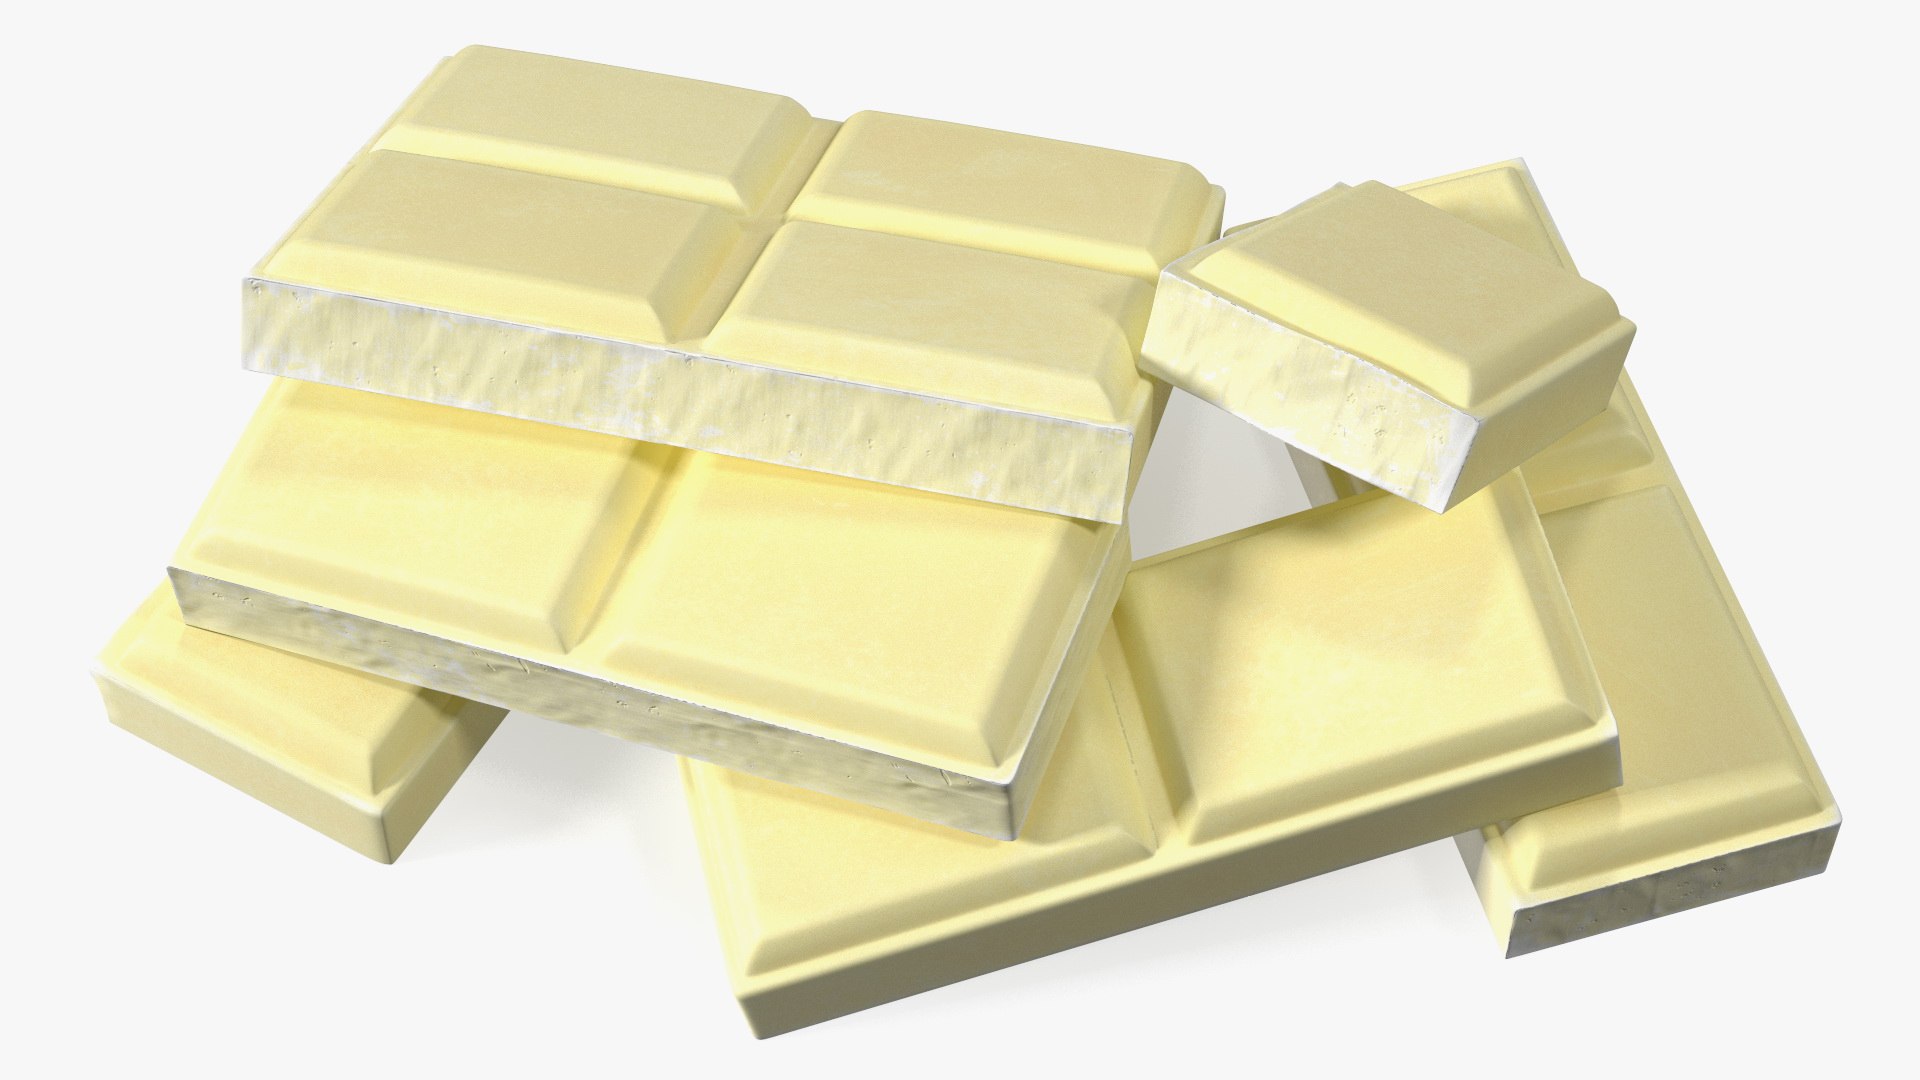 White Chocolate Squares 3D model - TurboSquid 2073274